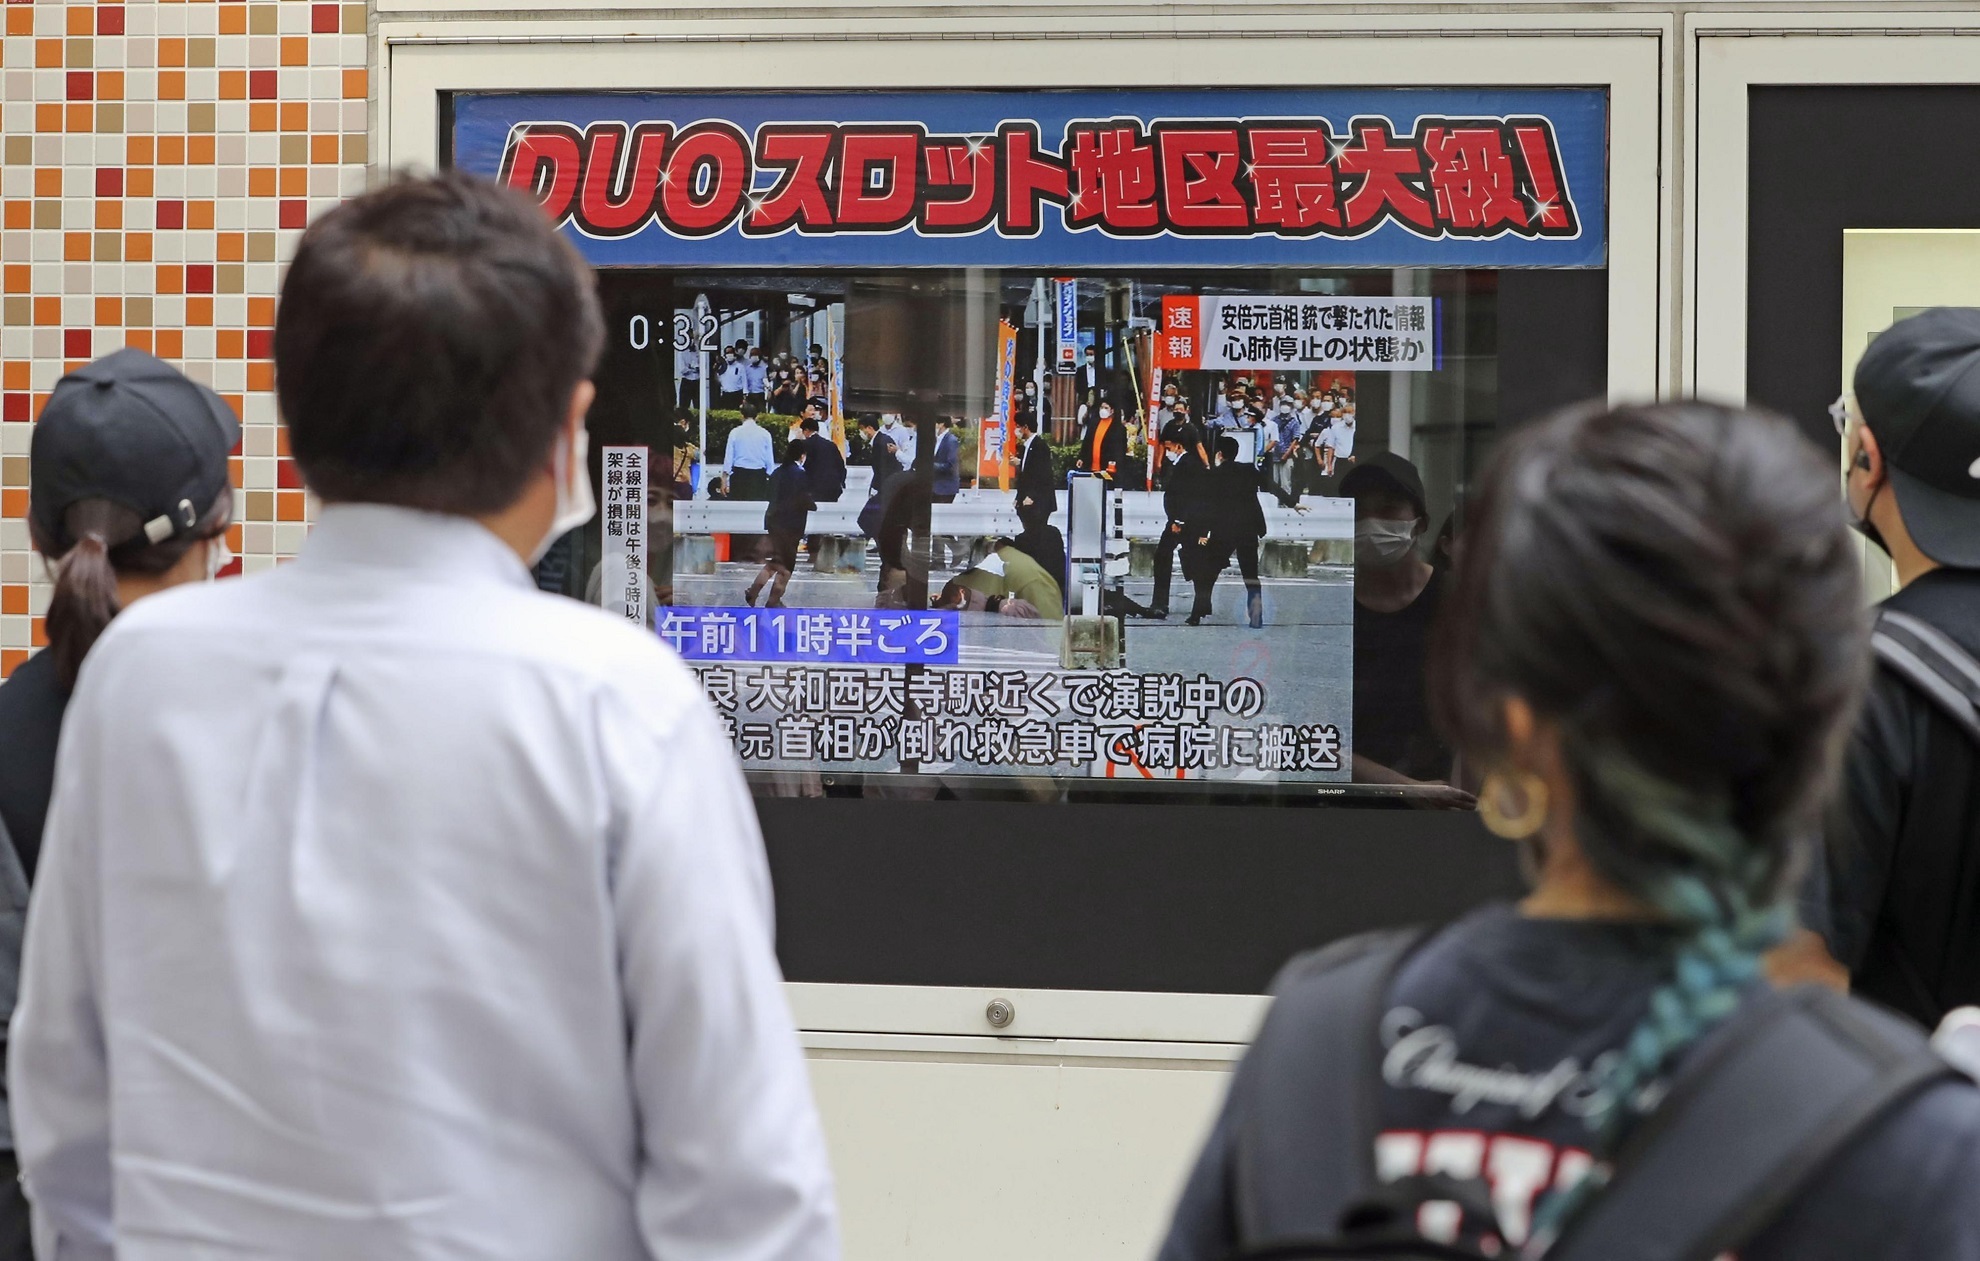 Televidentes japoneses siguen en la televisión la información del atentado contra Shinzo Abe, ex primer ministro de Japón